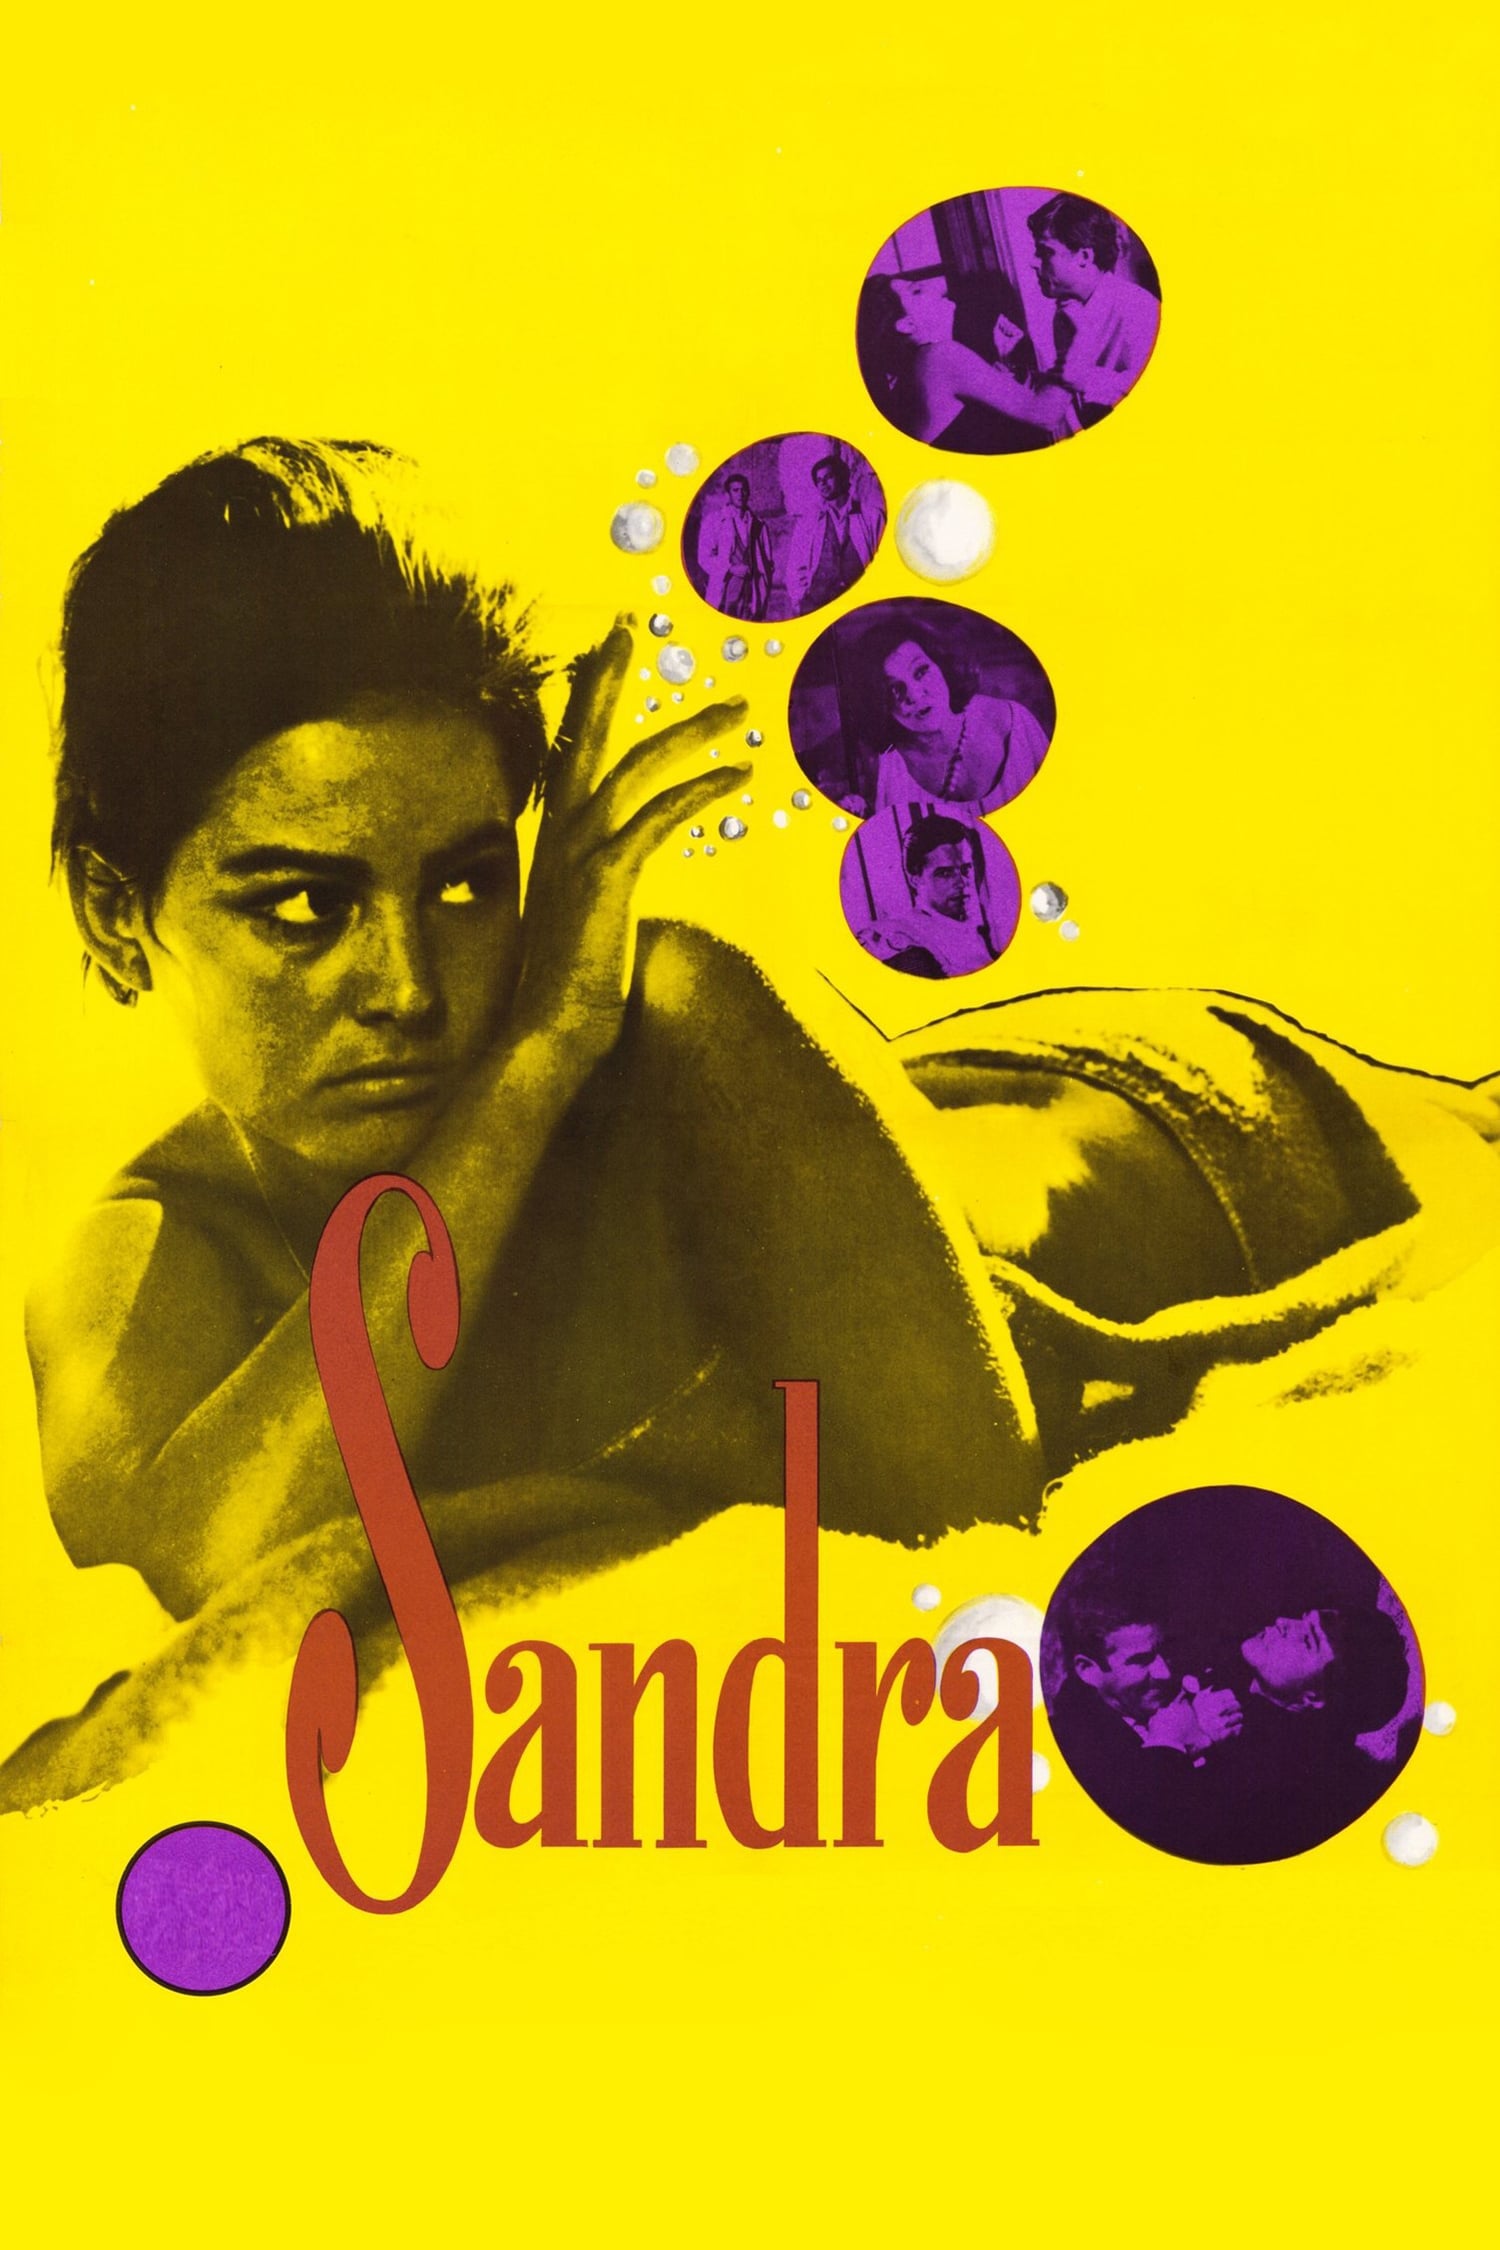 Sandra - Die Triebhafte